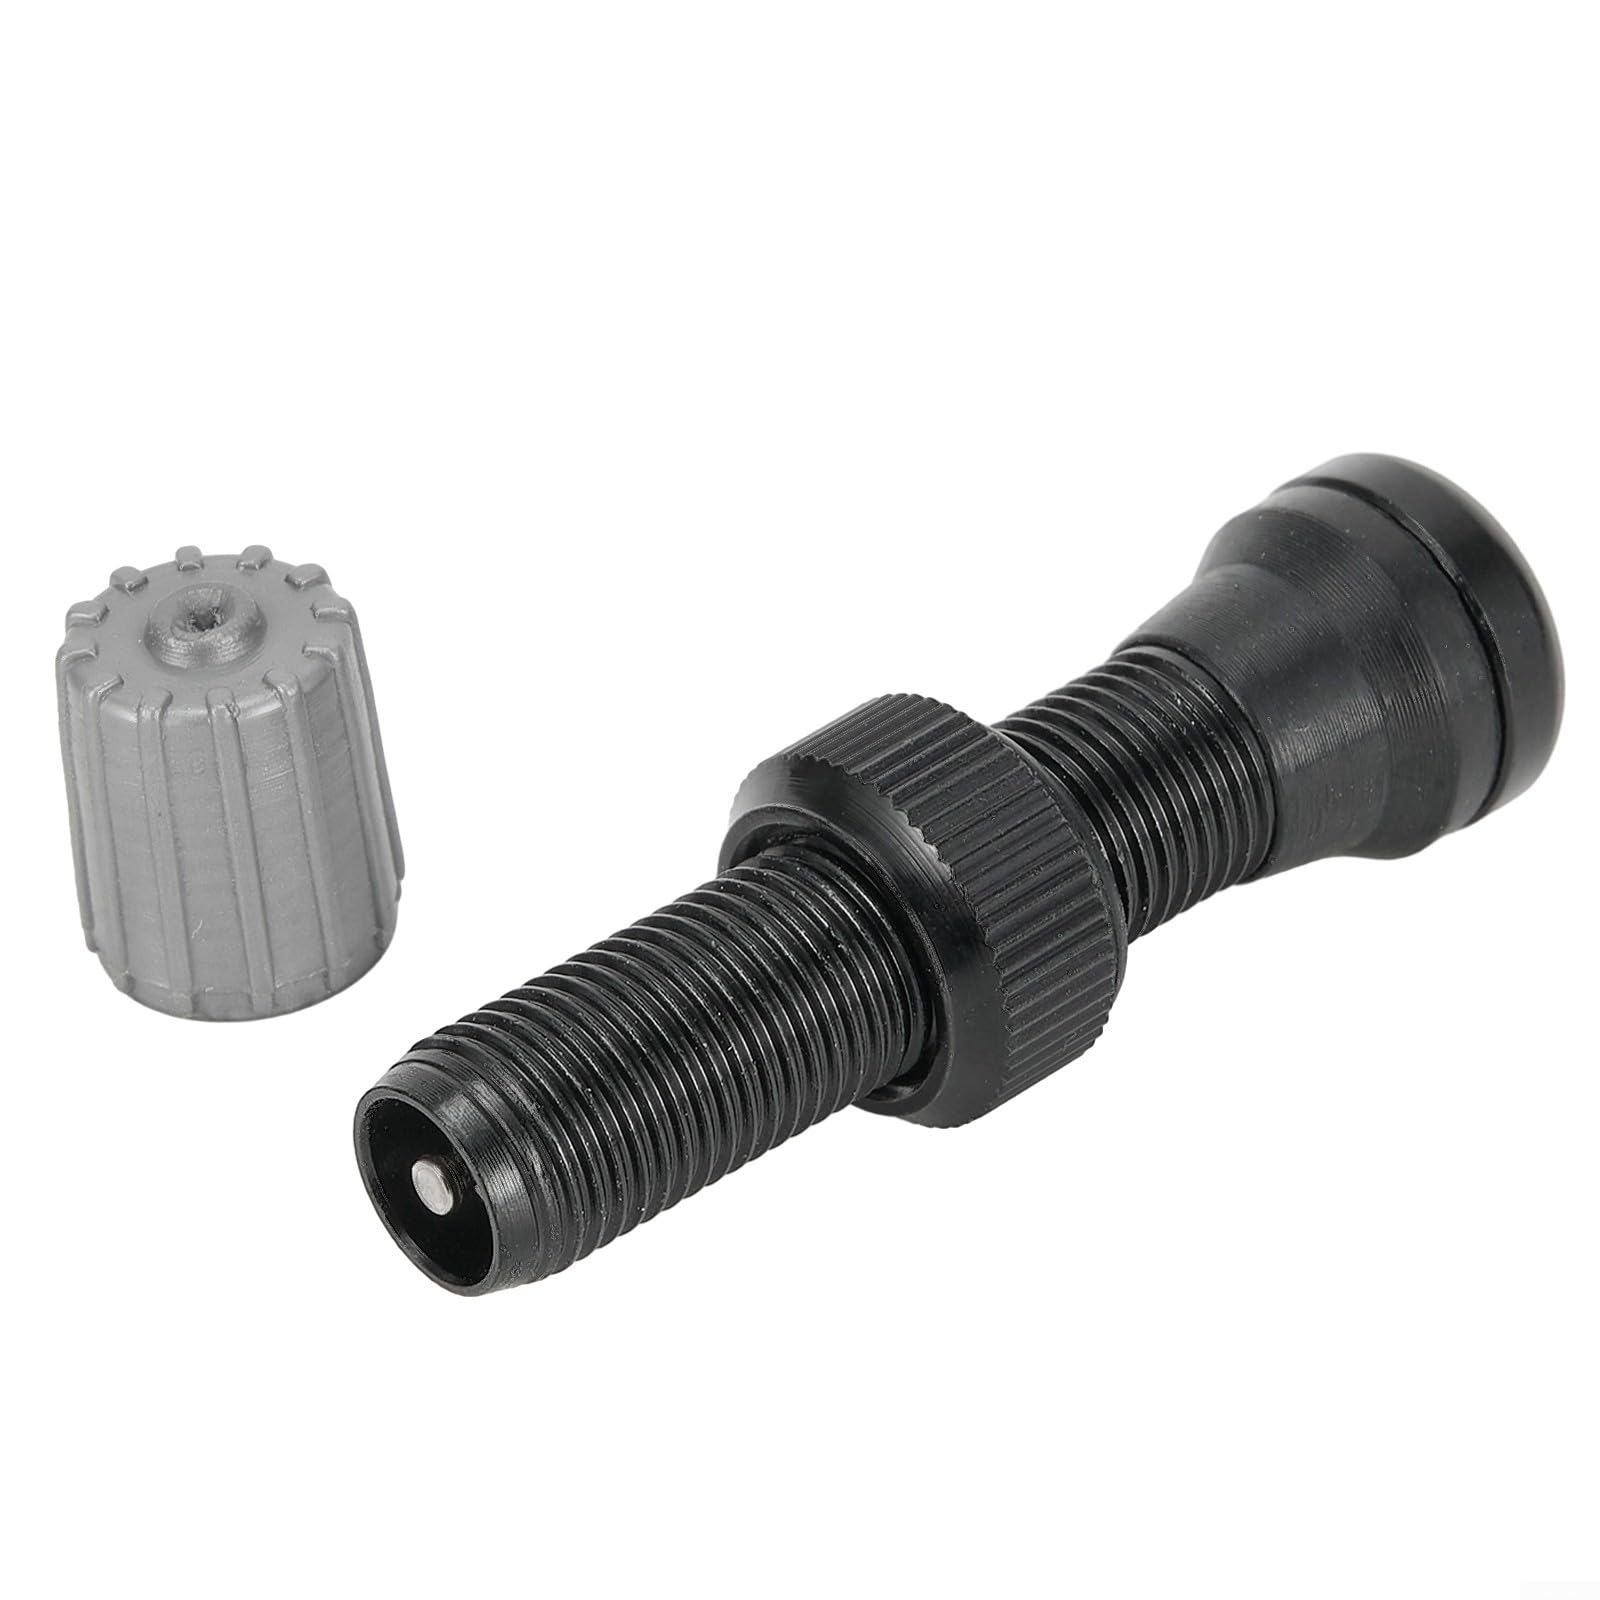 Stabiles Edelstahl-MTB-Fahrradventil, schlauchlos, 40 mm, für Ventile für Fahrradfelgen, Reifen, Reifen (schwarz) von Zilimontt